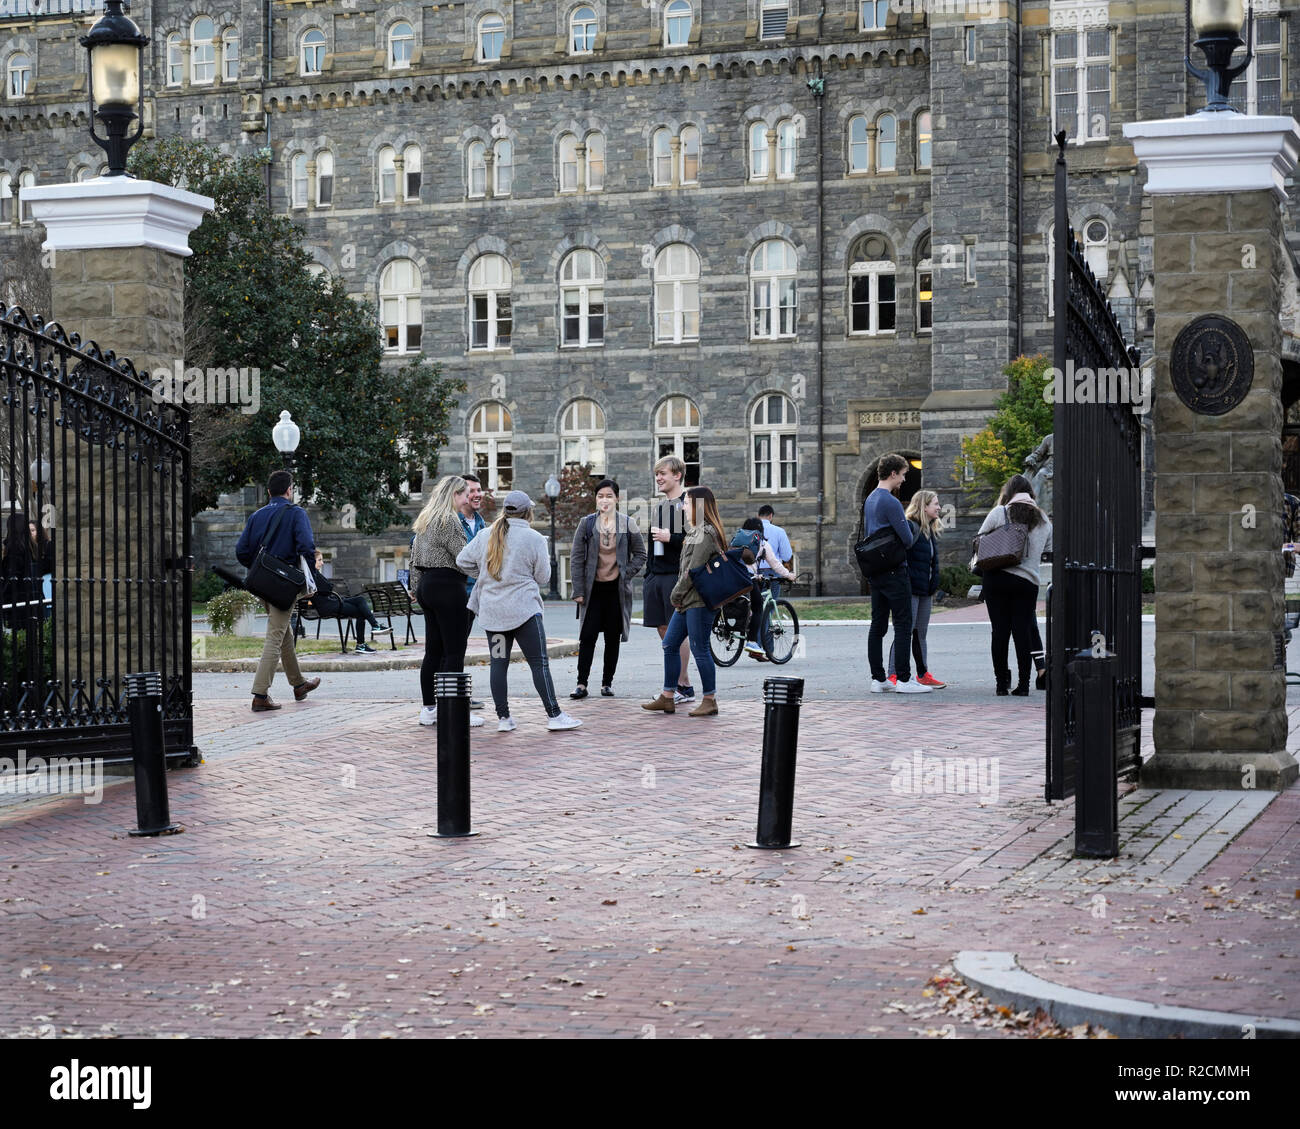 La porte d'entrée à l'Université de Georgetown avec college students talking laughing Banque D'Images